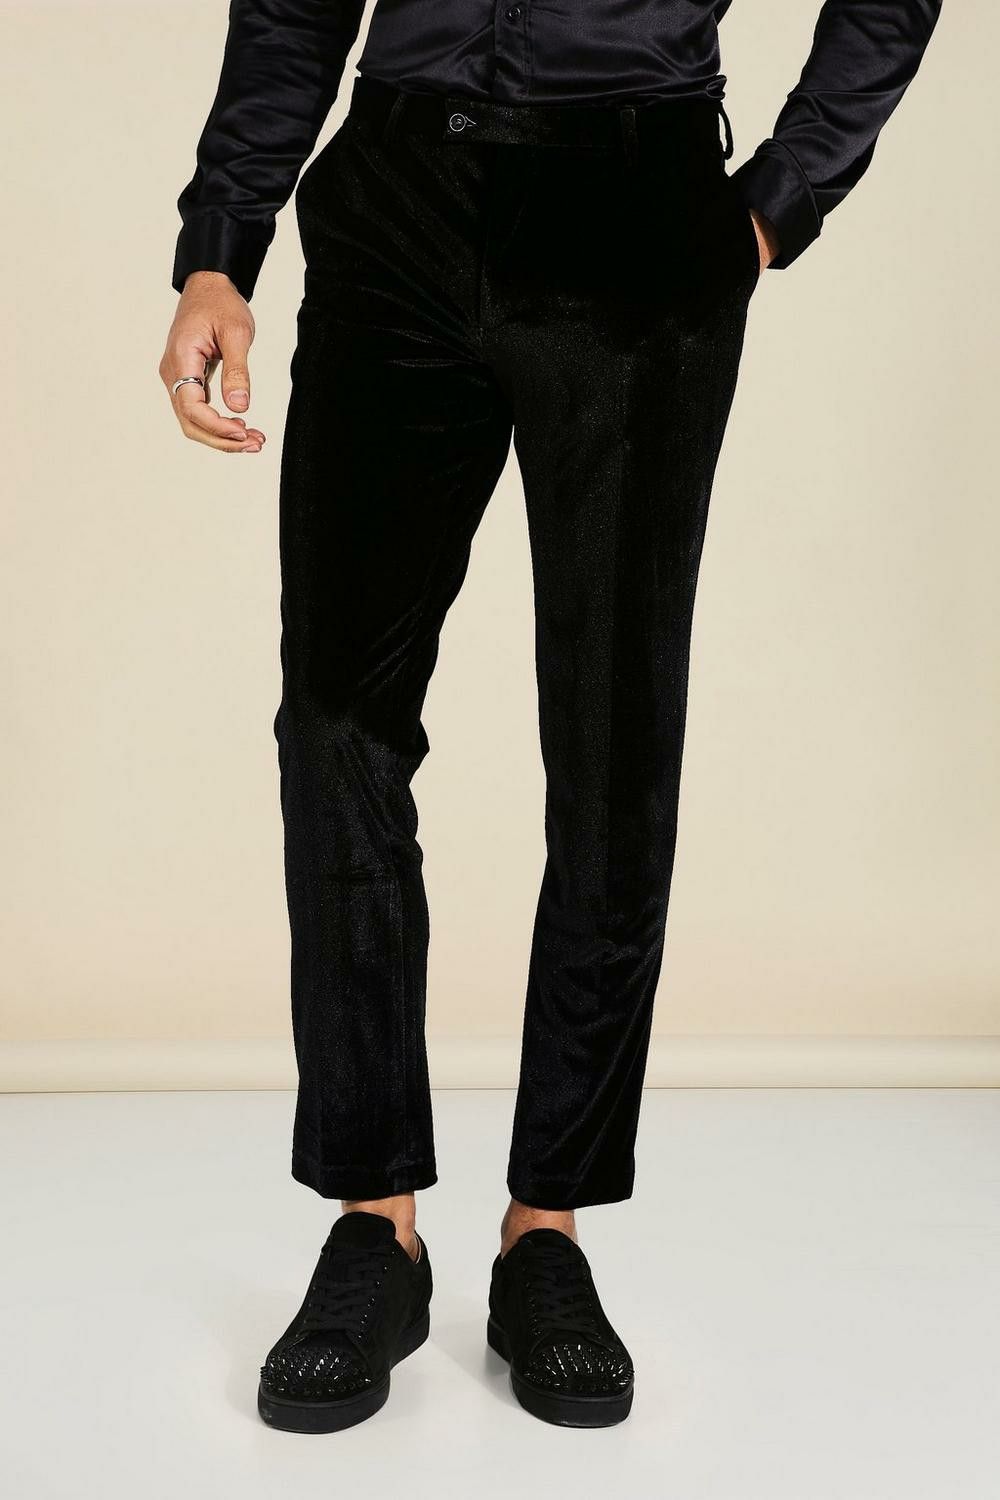 Velvet Super Skinny Black Trousers Size: 34